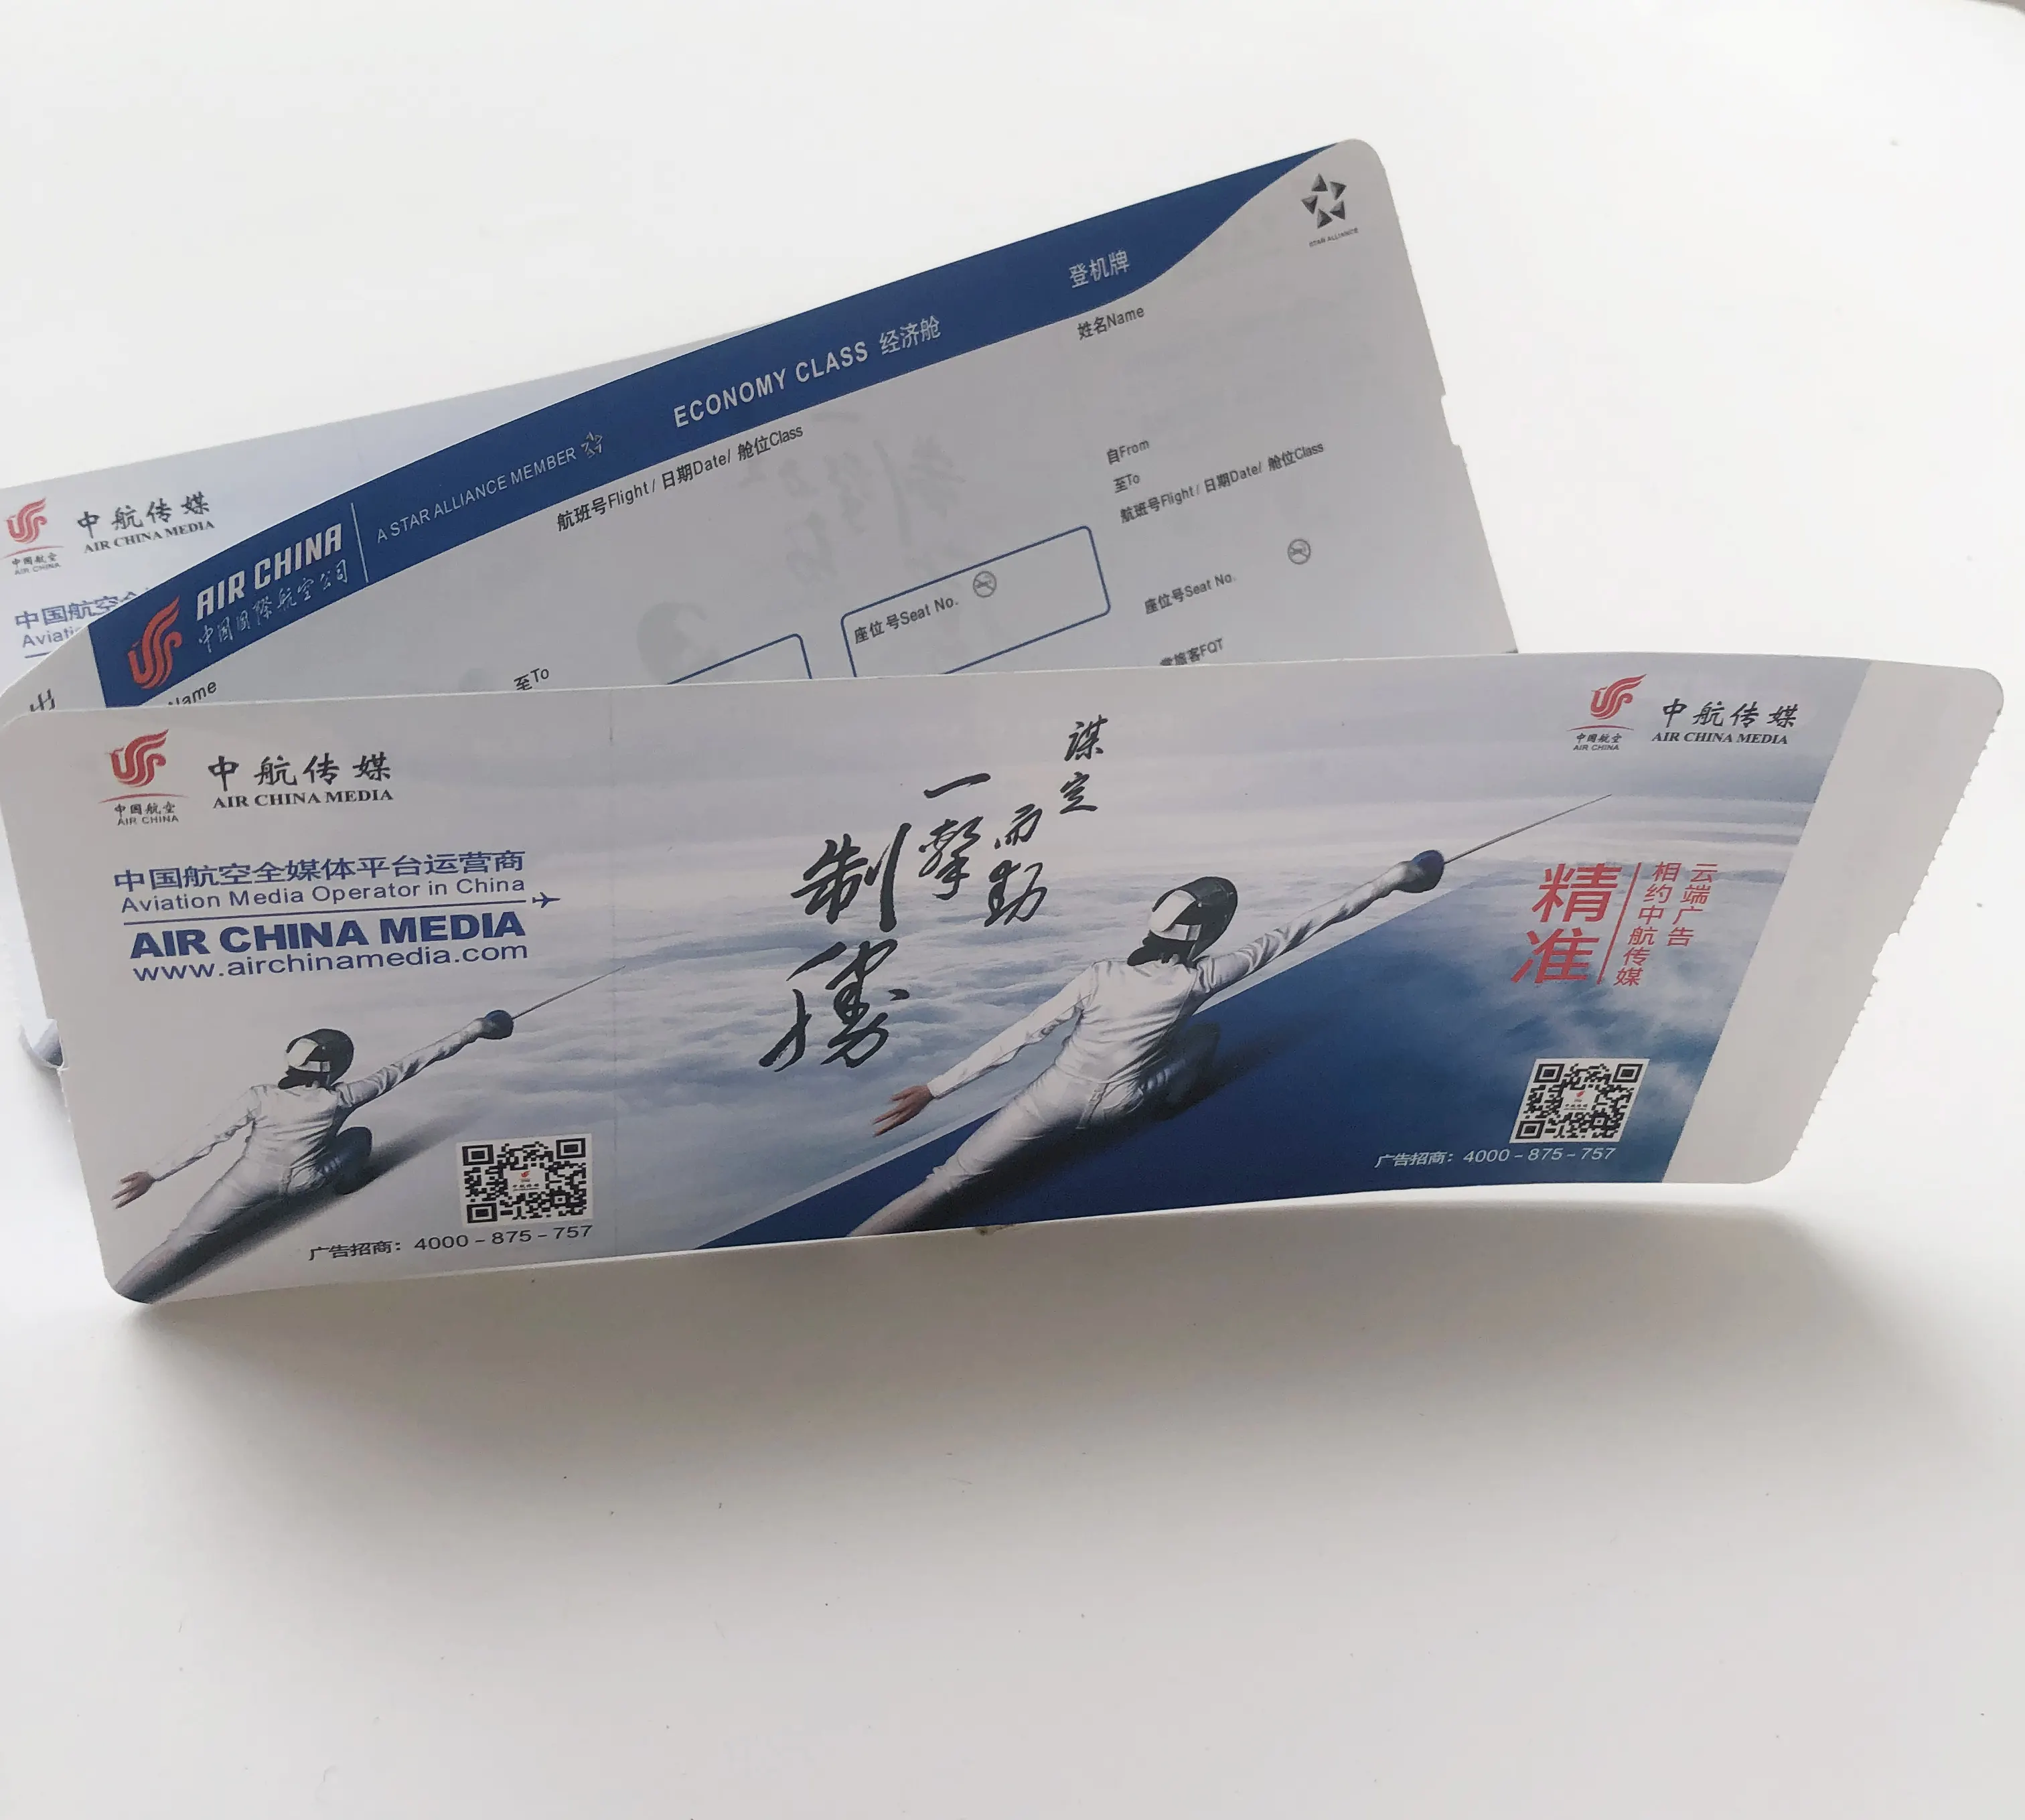 बुकिंग सस्ते उड़ान एयरलाइन टिकट थर्मल कागज बोर्डिंग पास एयर शिल्प टिकट